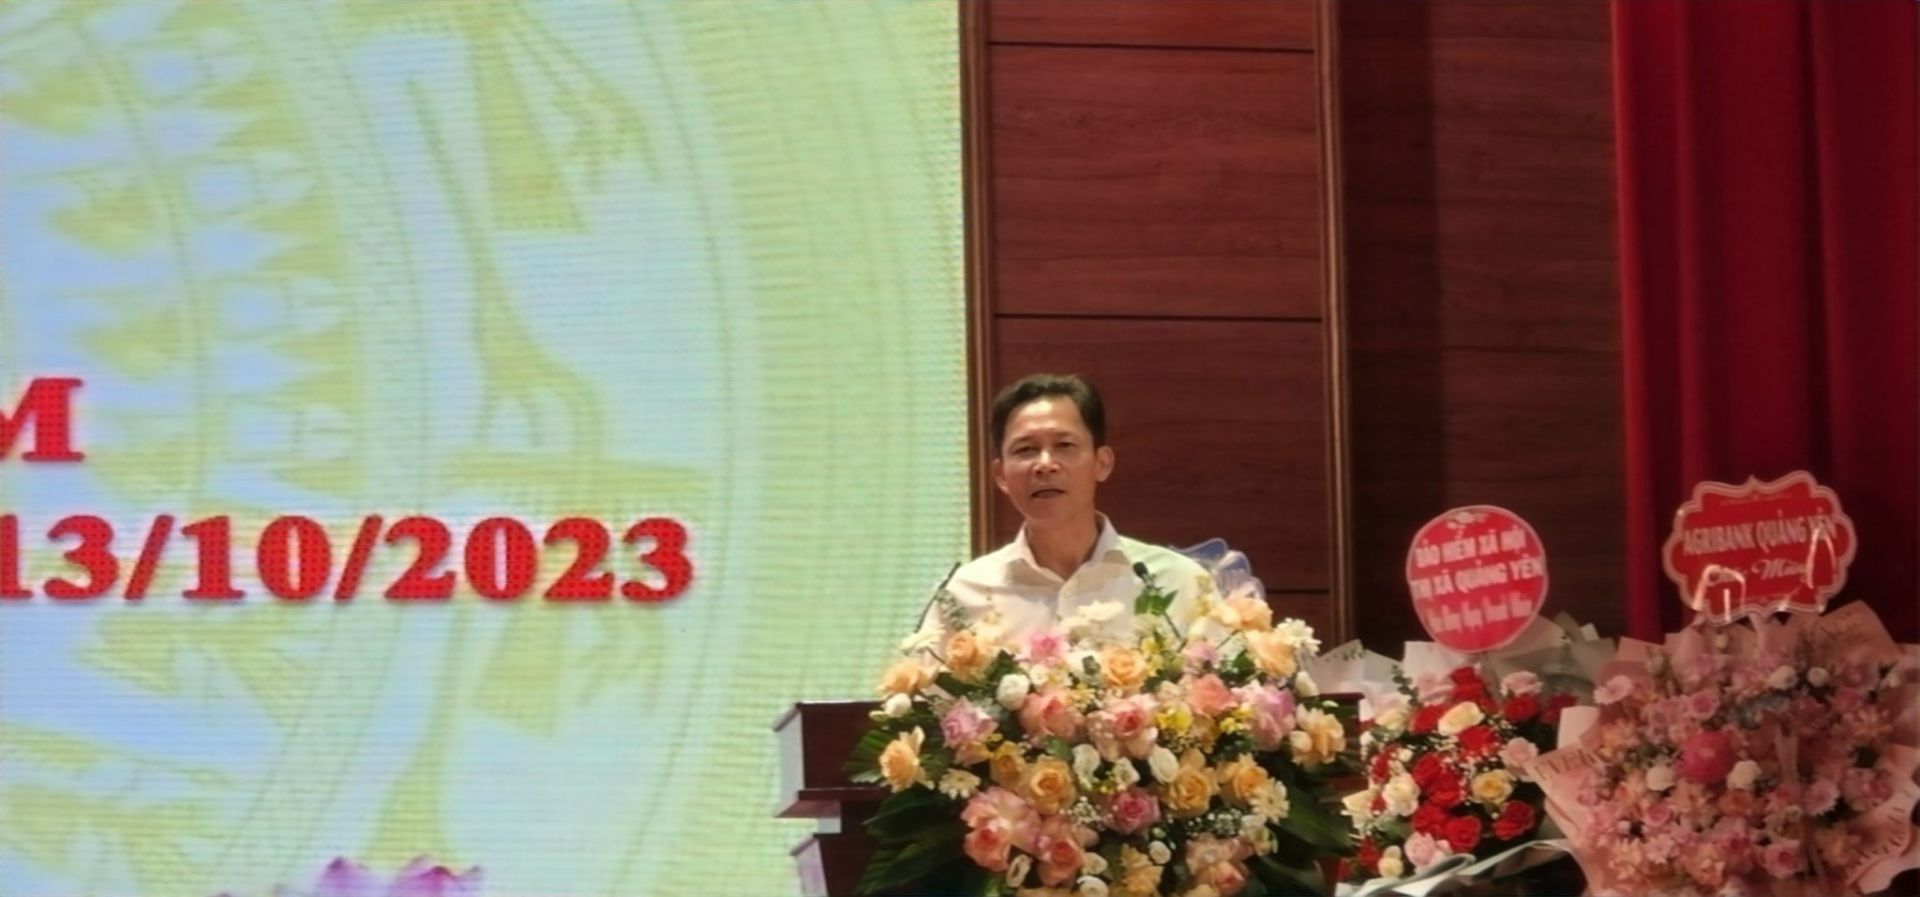 Bí thư thị ủy thị xã Quảng Yên ông Hồ Văn Vịnh xúc động phát biểu